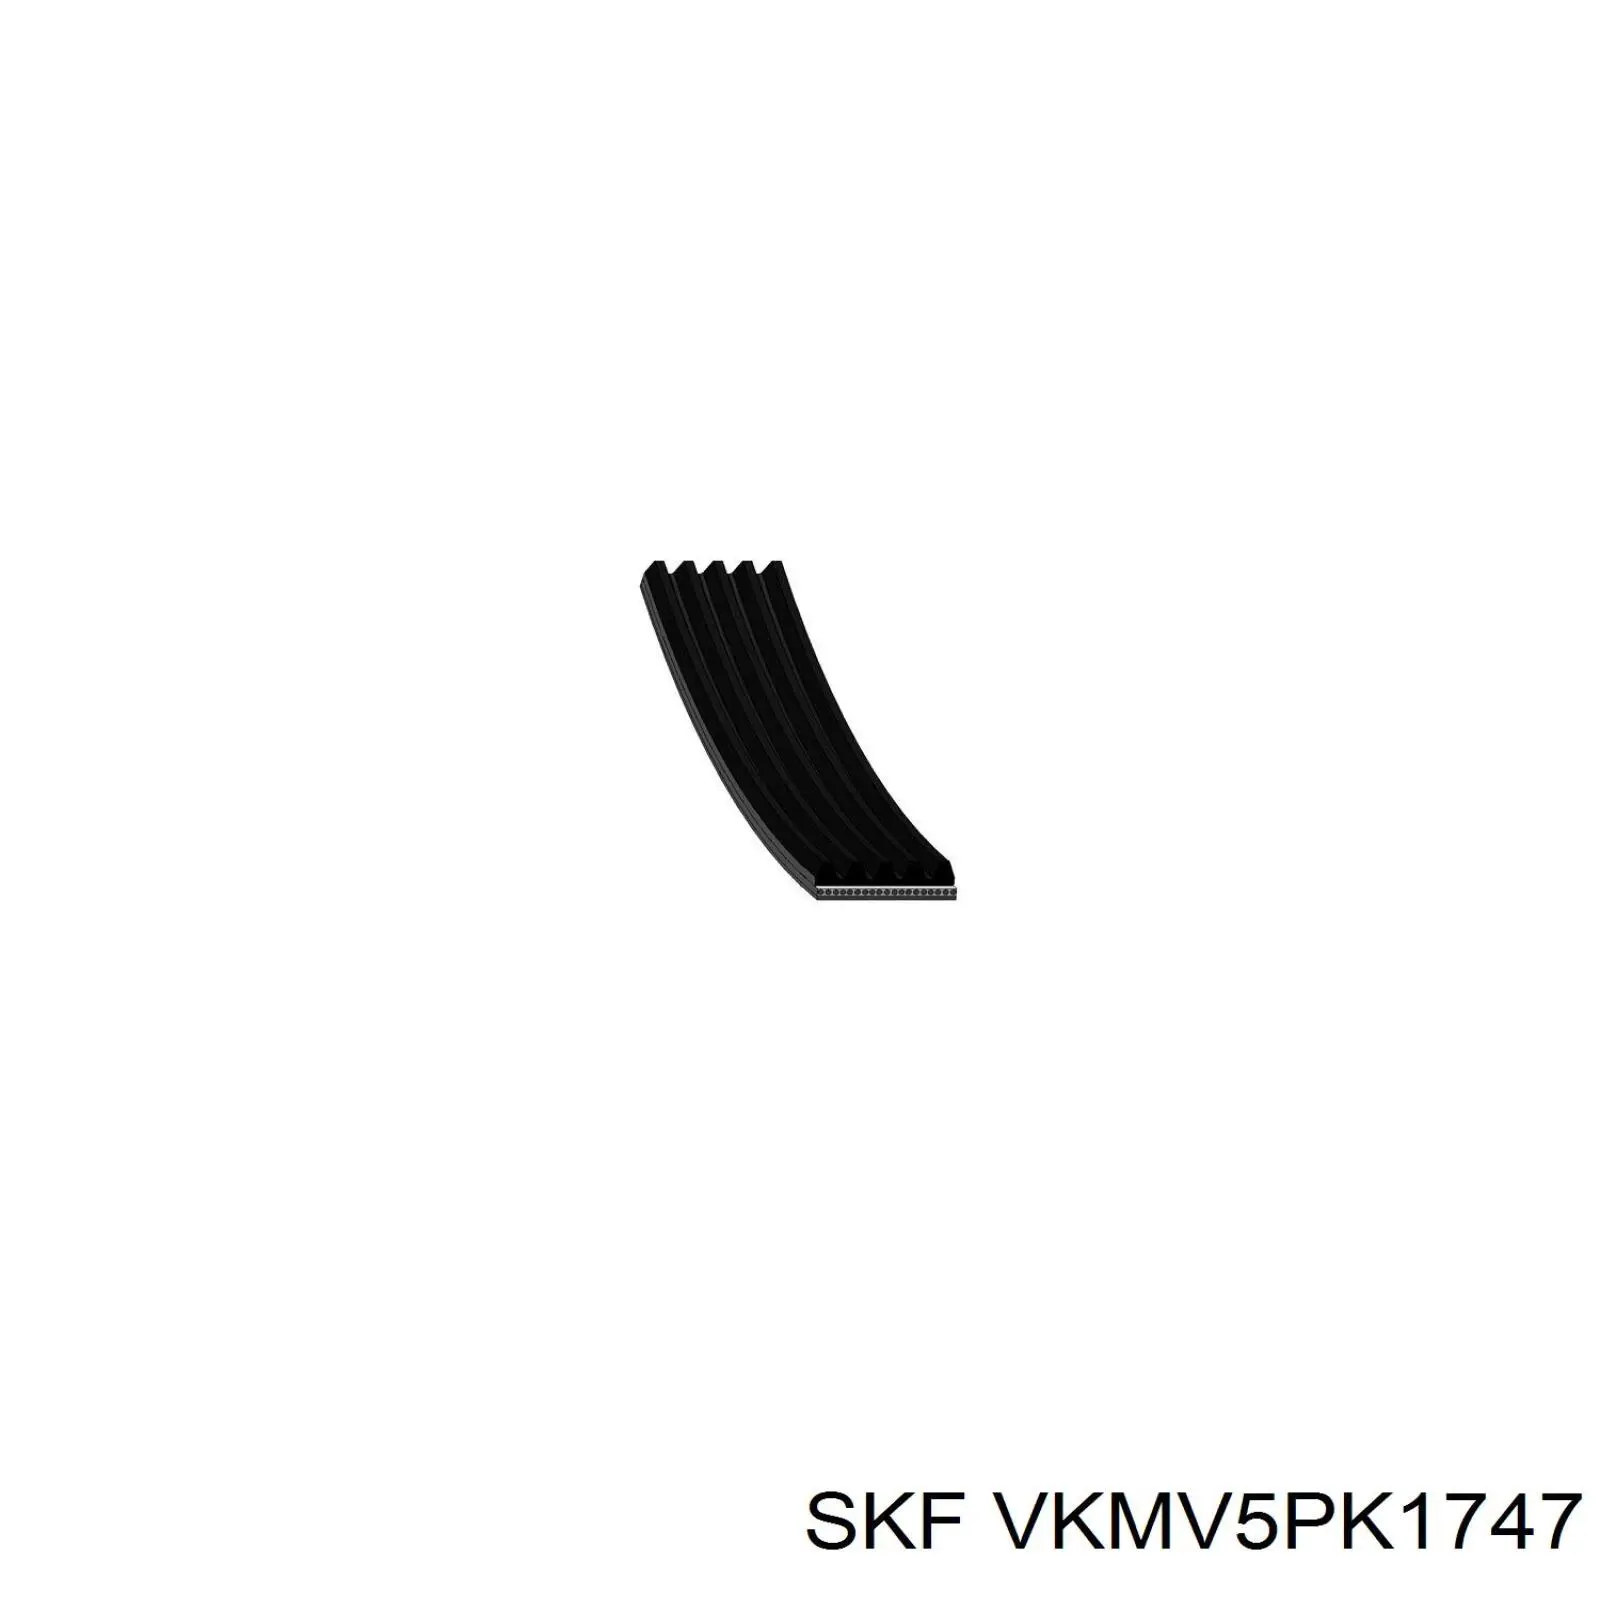 VKMV5PK1747 SKF correa trapezoidal